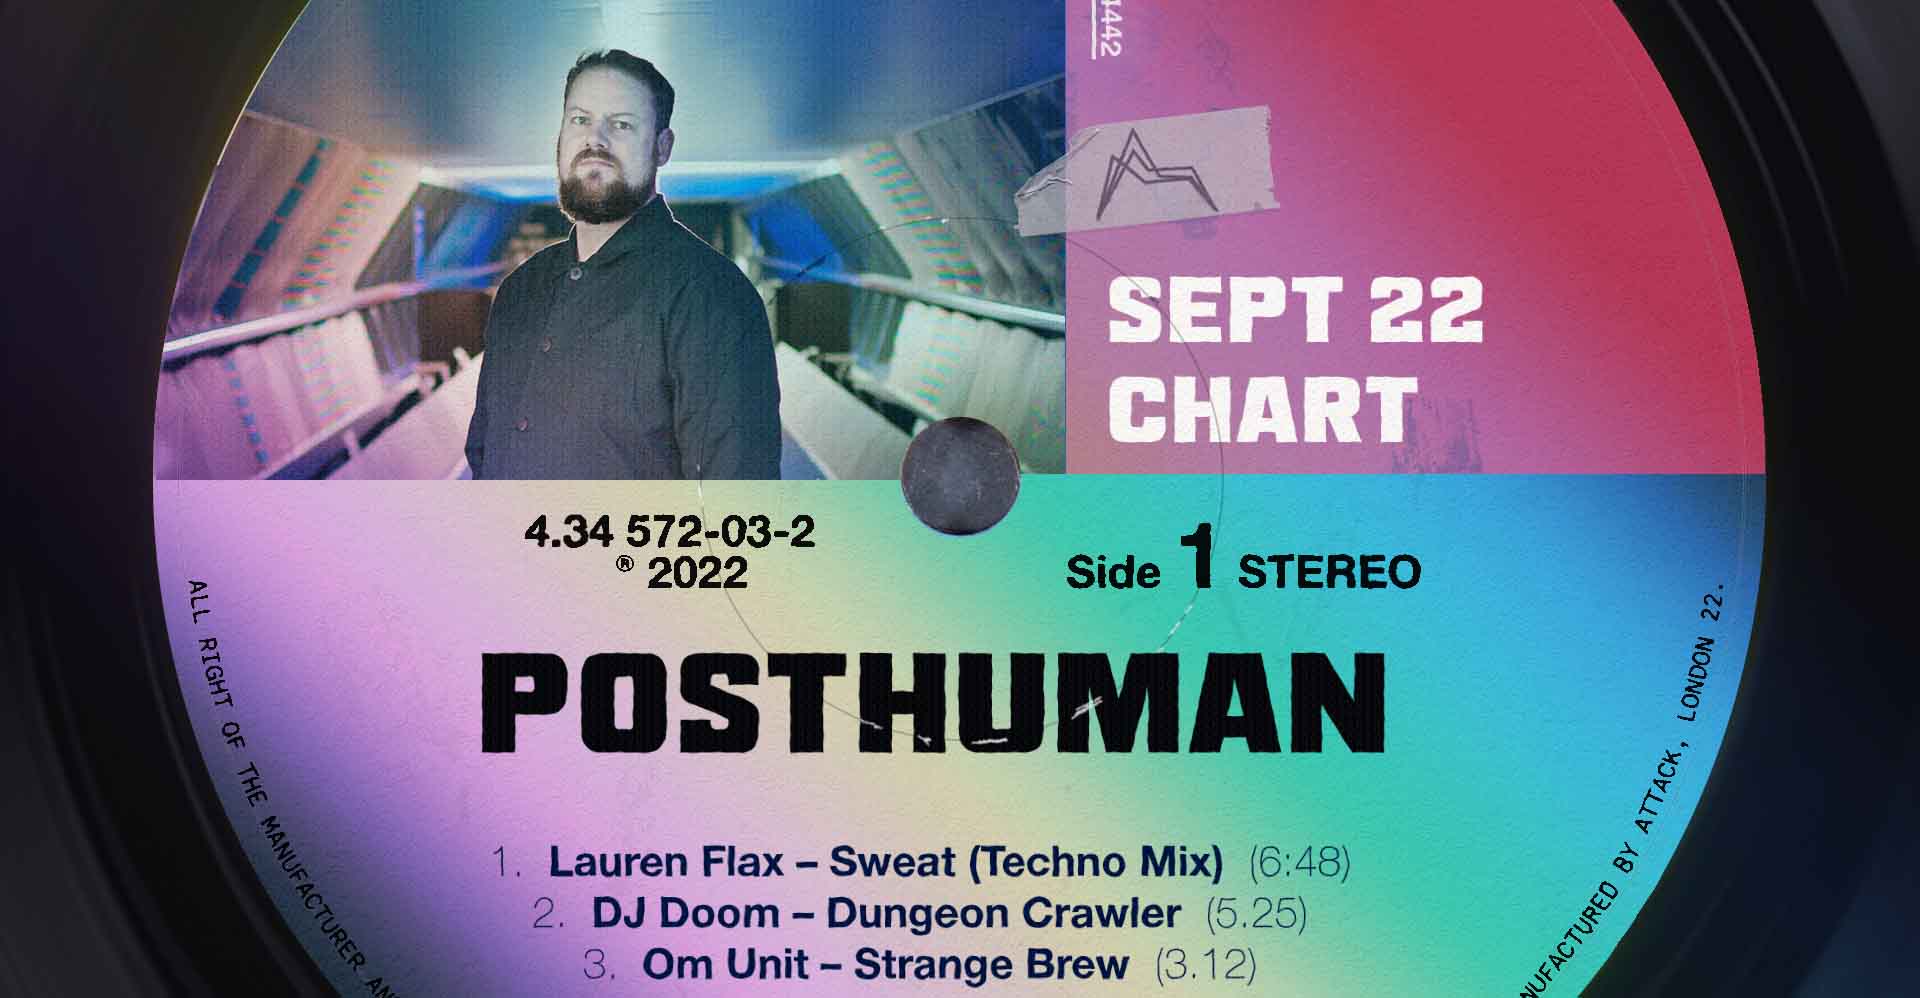 Posthuman Sept 22 Chart